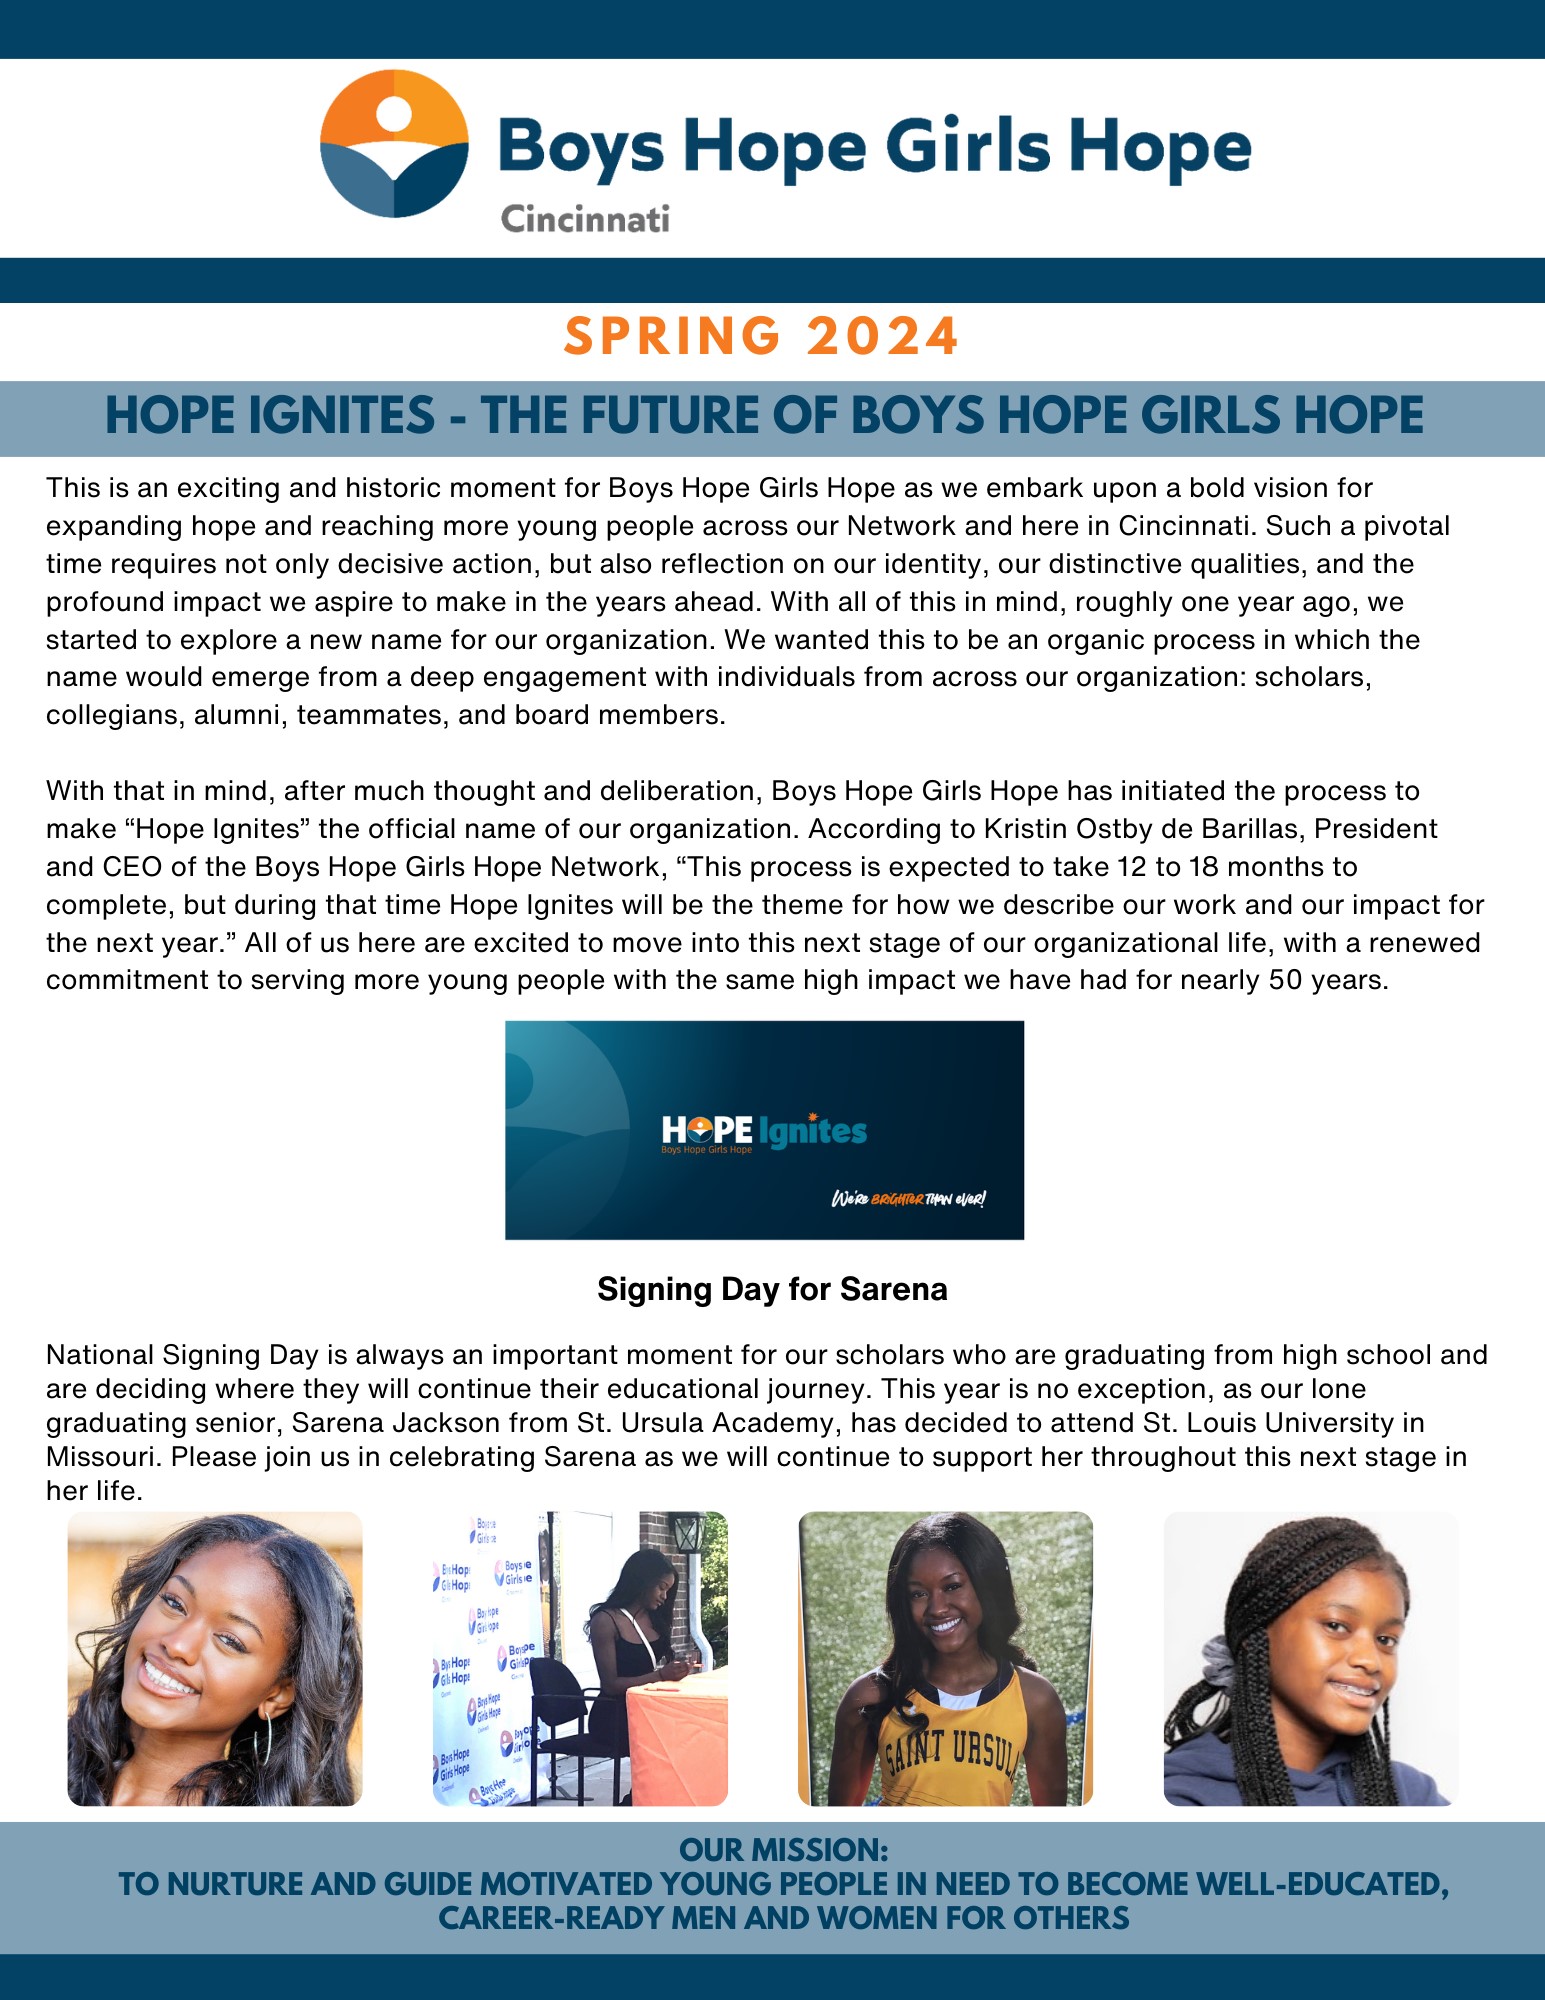 Spring 2022 Newsletter